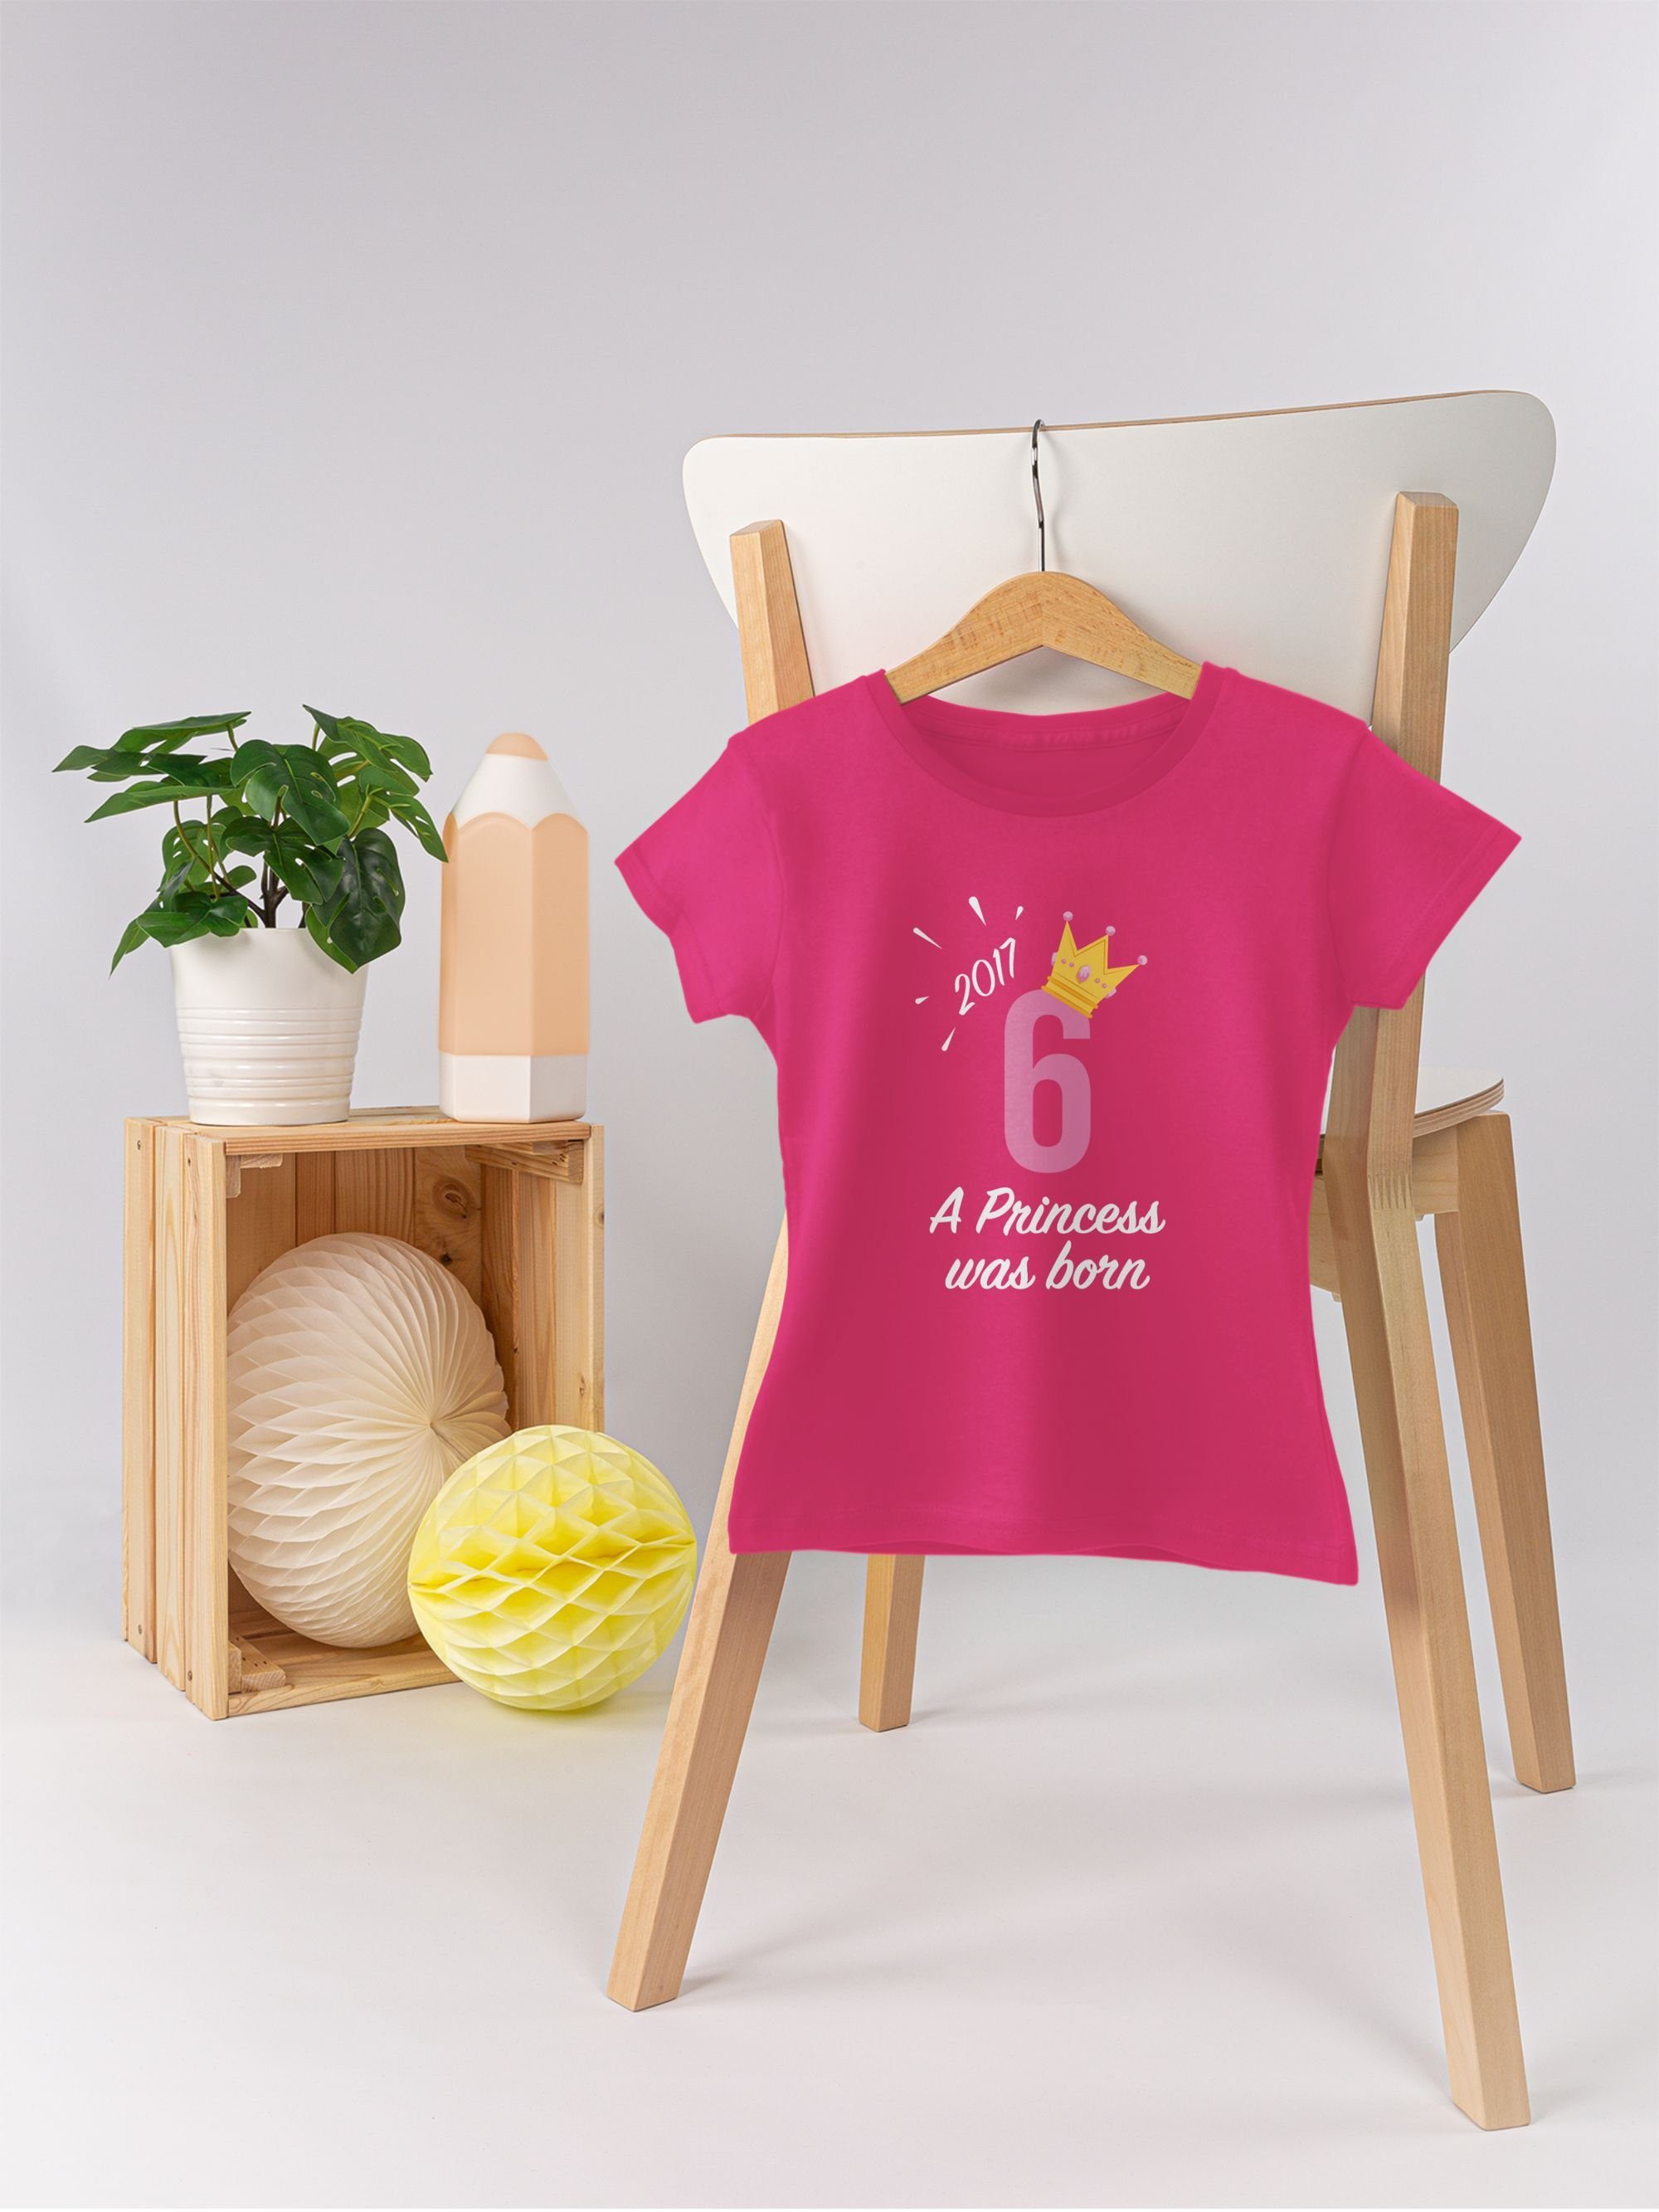 Shirtracer T-Shirt Mädchen Sechster Fuchsia 1 6. Geburtstag 2017 Princess